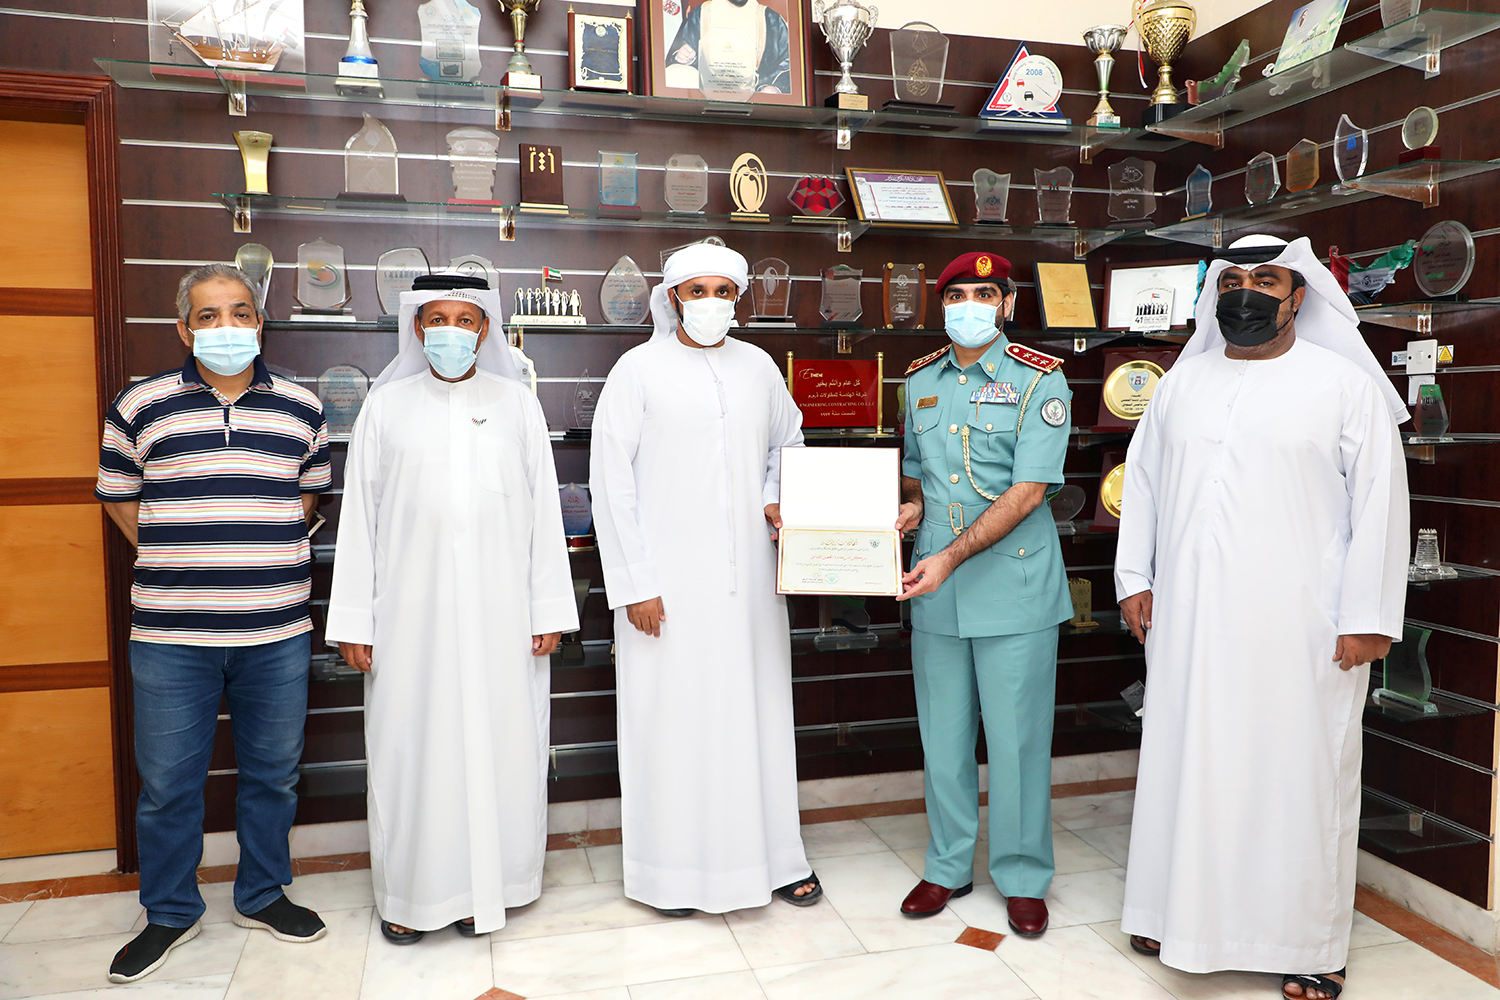 نادي دبا الحصن يشكر مركز شرطة مدينة دبا الحصن الشامل